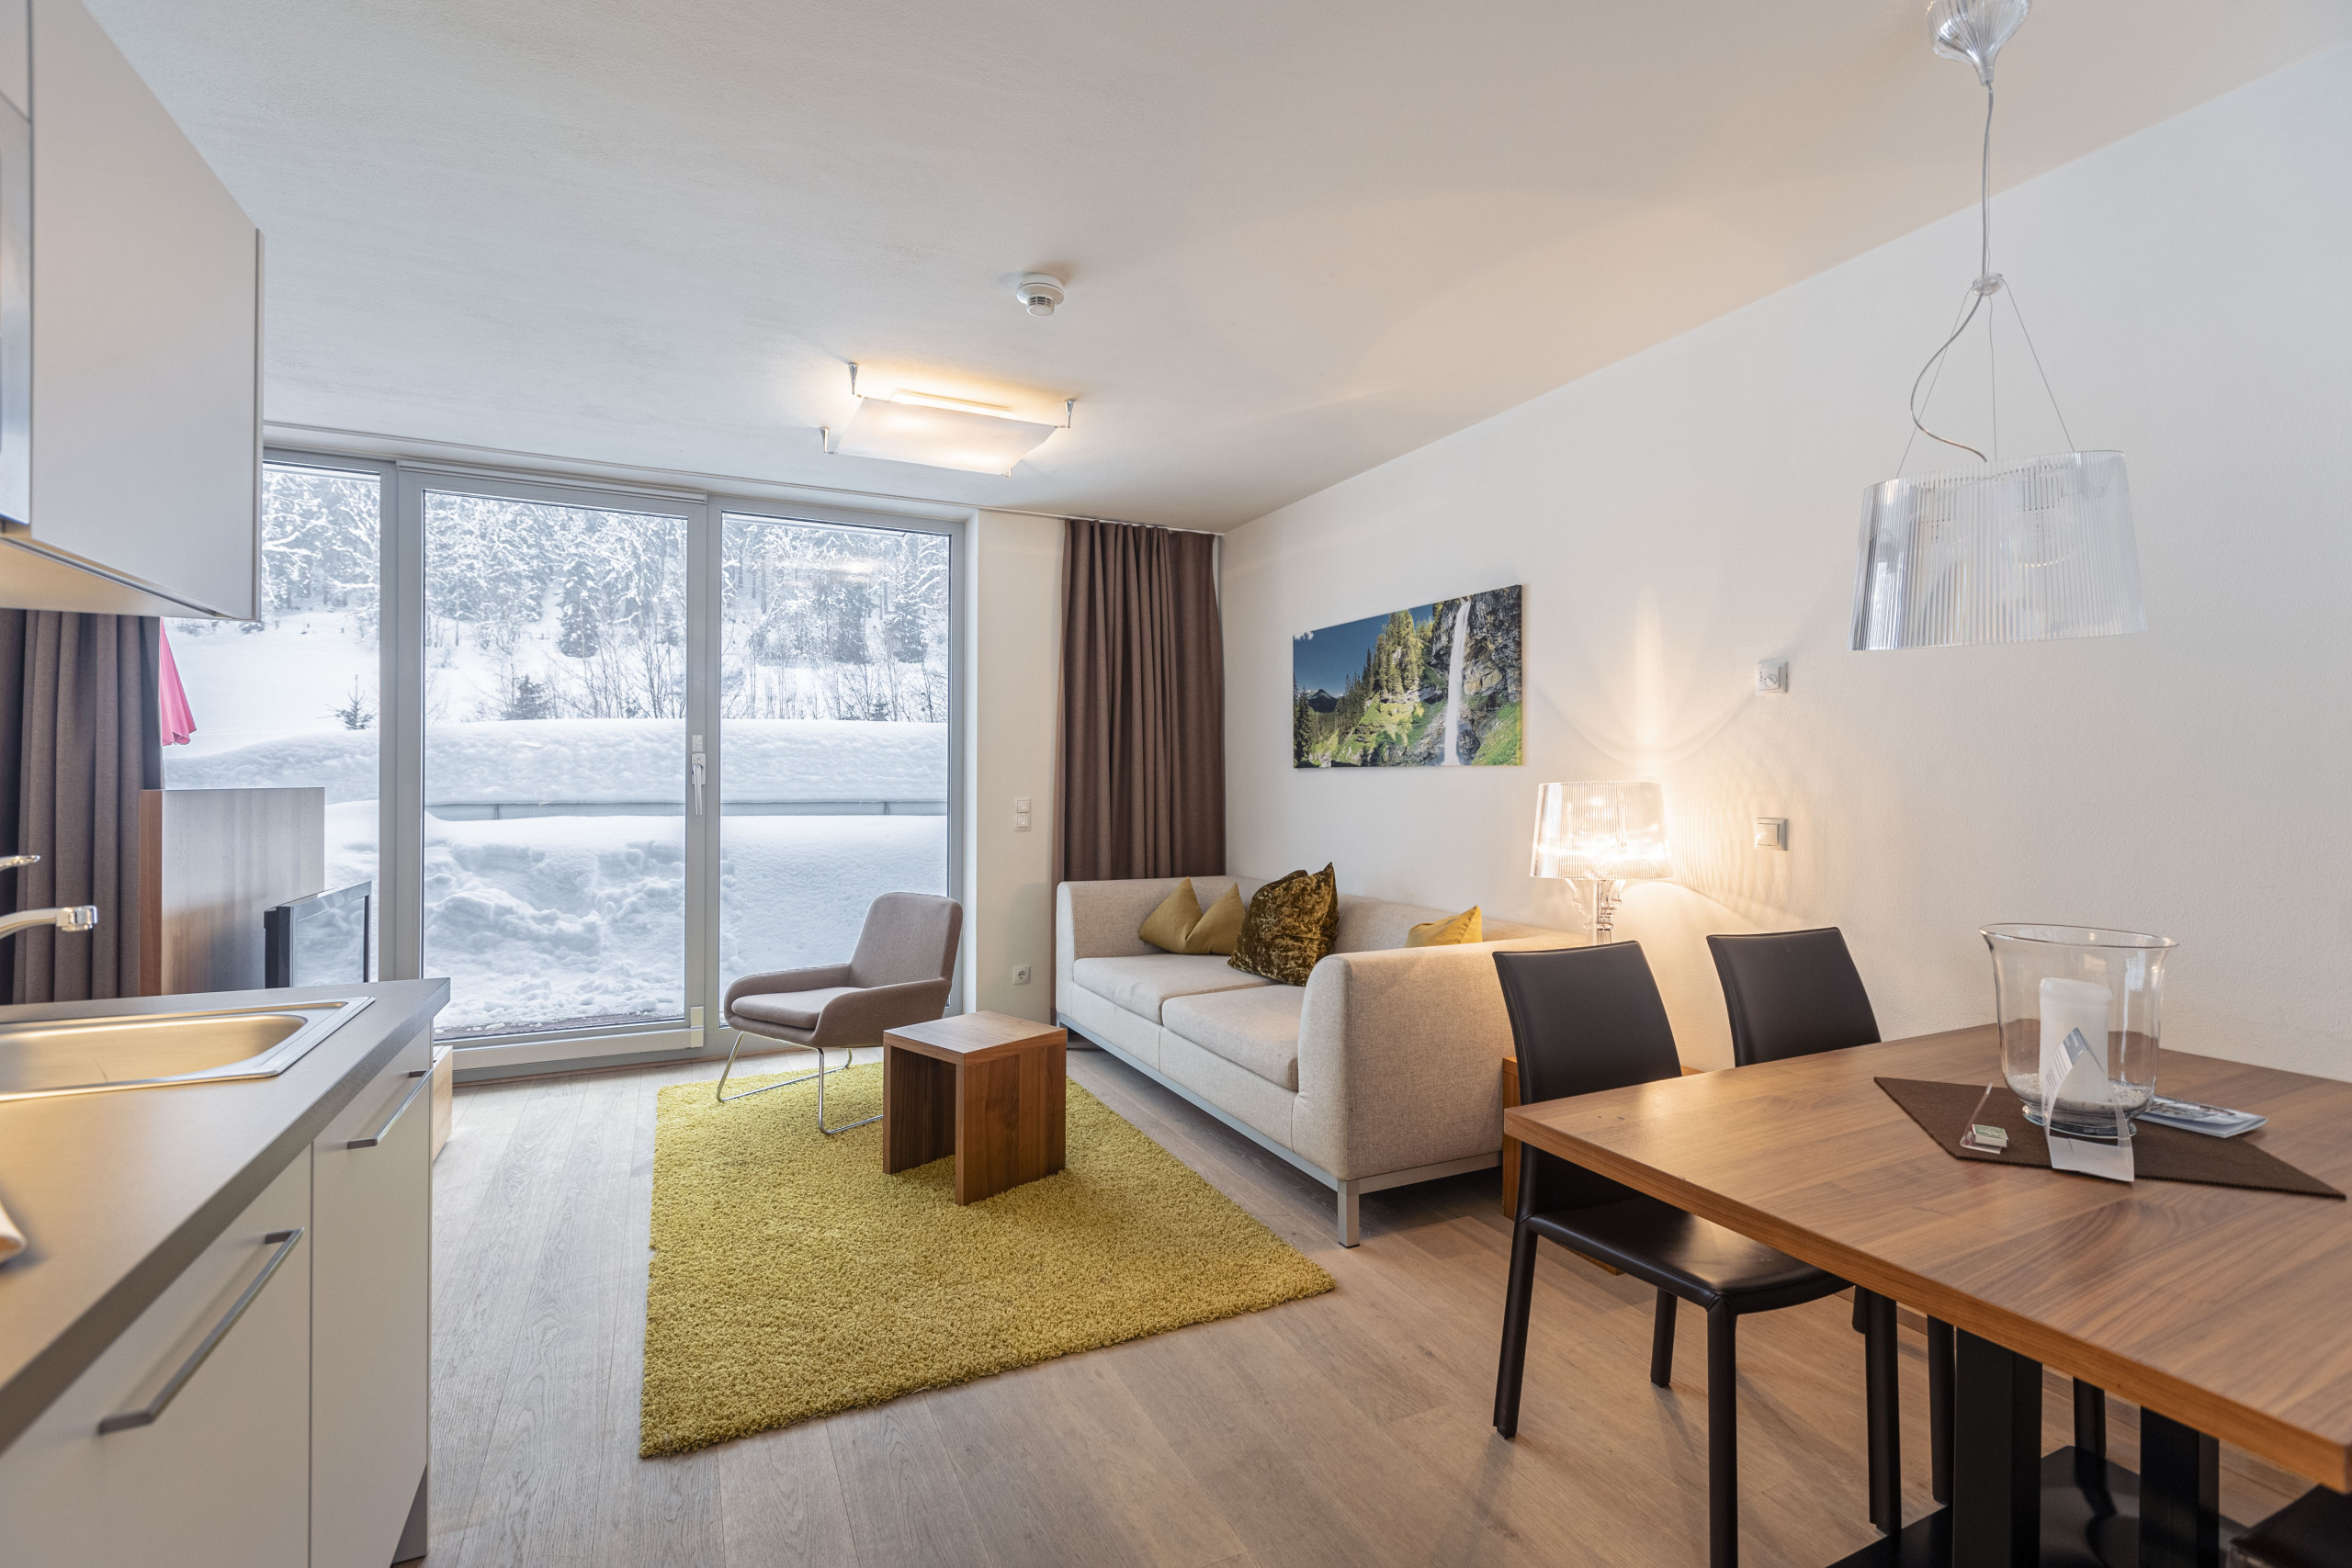  in Radstadt - Appartement met 1 slaapkamer & zomer-buitenbad